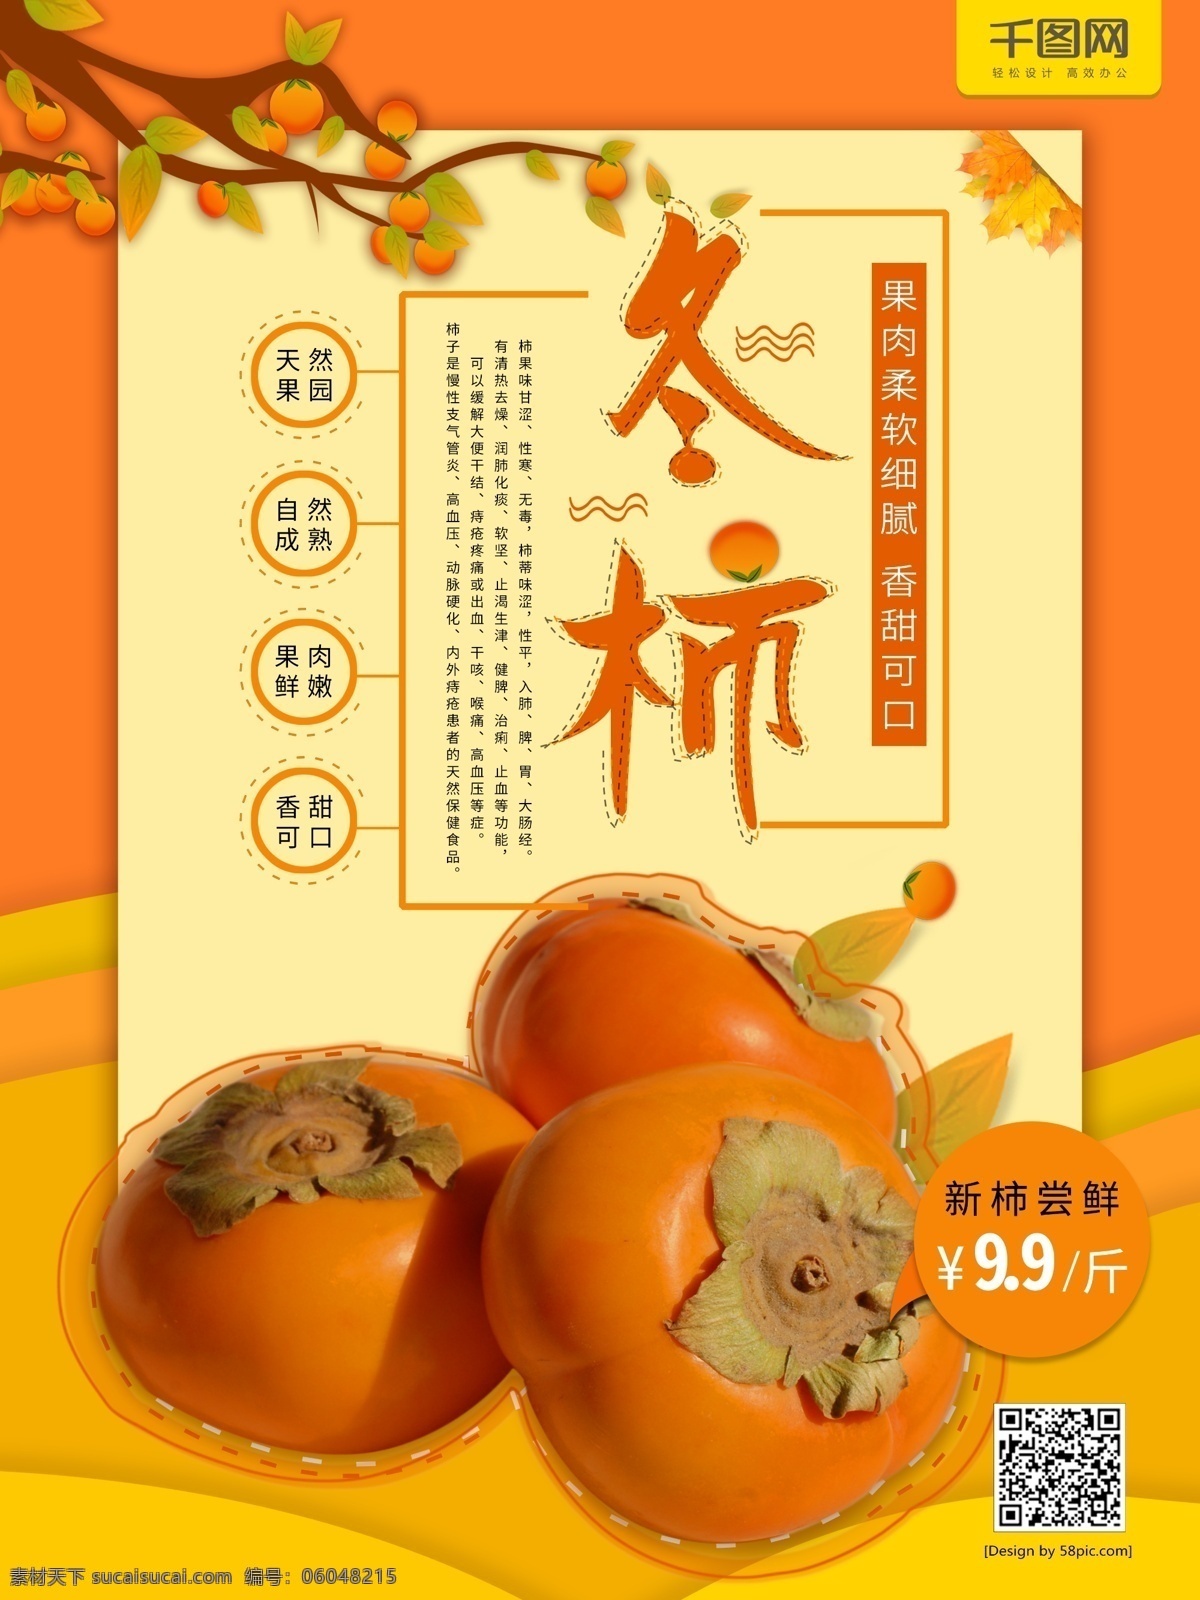 新鲜 水果 柿子 美食 海报 水果海报 美味 甜食 果子 柿子海报 甜柿子 新鲜柿子 冬柿